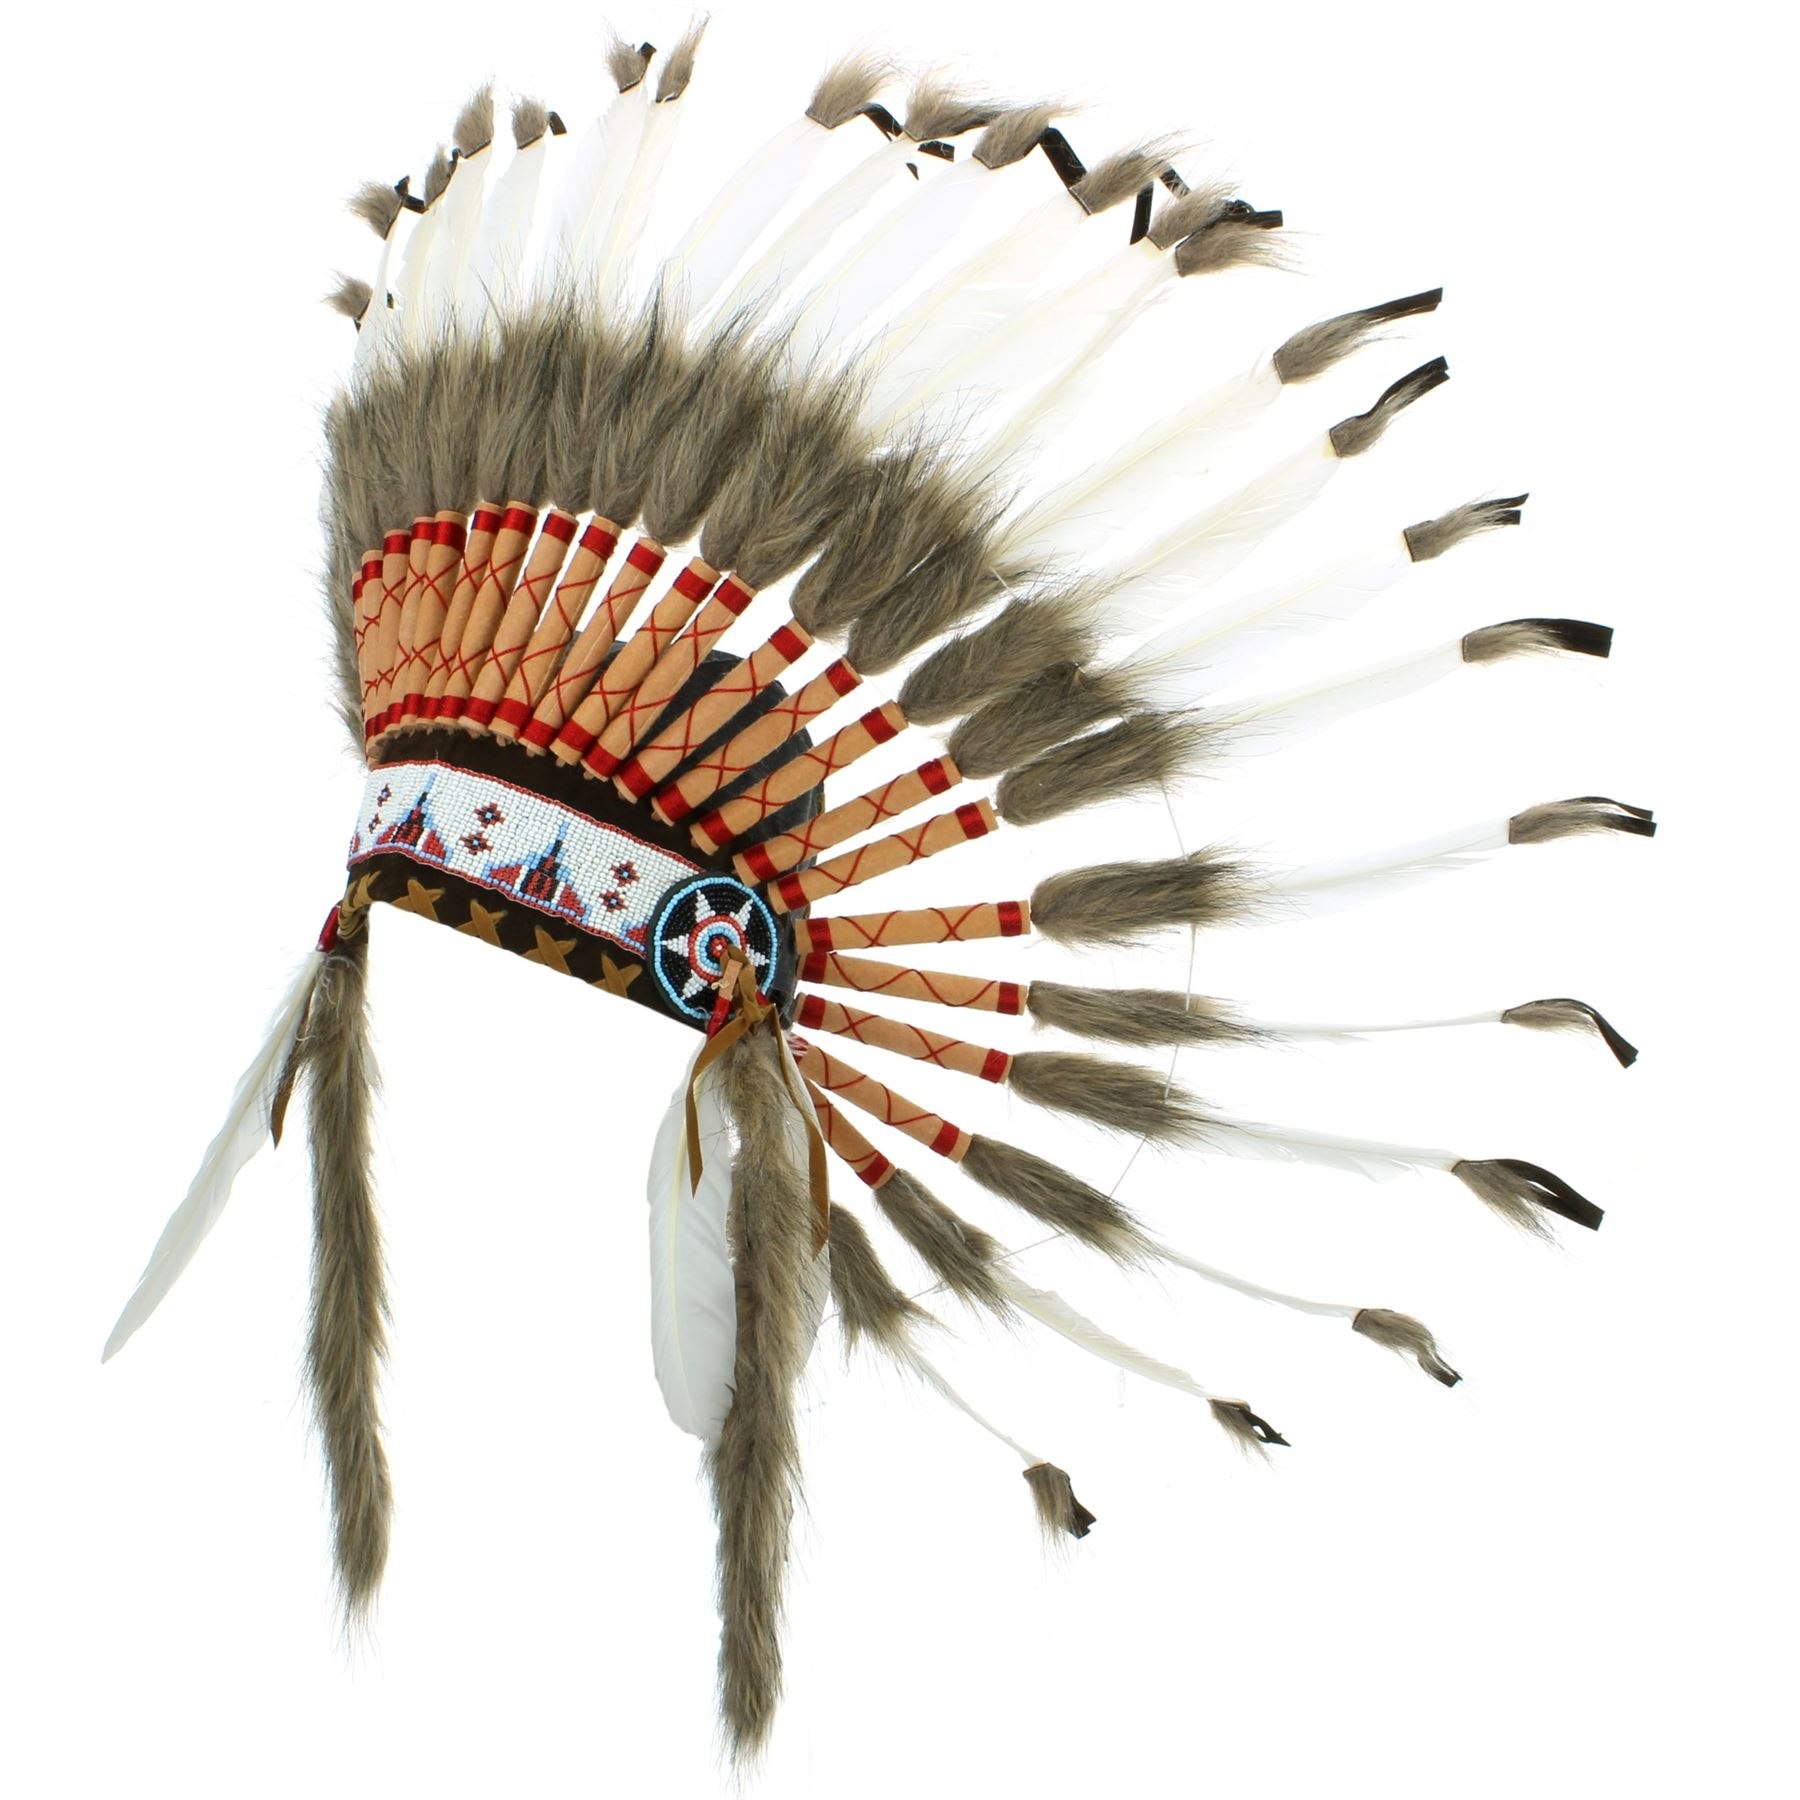 Индейский народ сканворд. Индейский Роуч. Головной убор индейца Роуч. Головные уборы индейцев Северной Америки. Церемониальный костюм индейцев Калифорнии из перьев ворона.